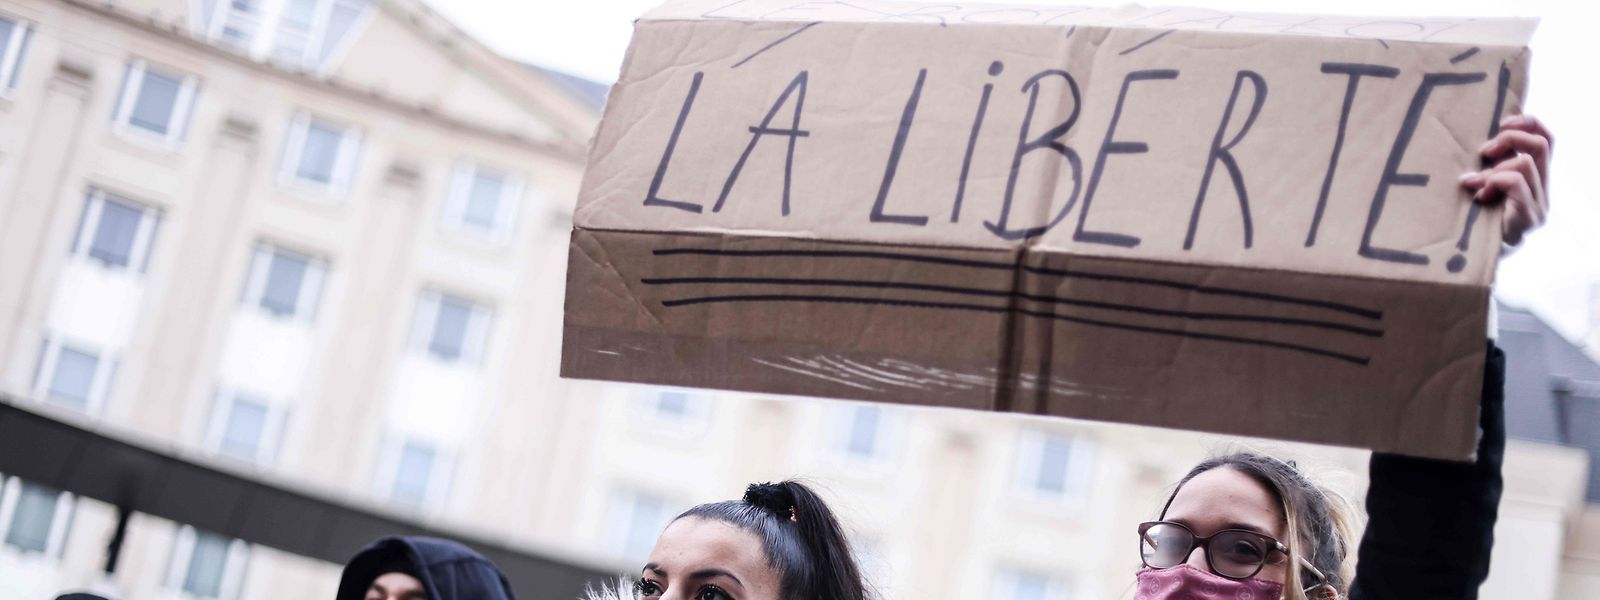 Des manifestants, dimanche à Bruxelles, demandent que l'étau imposé sur les libertés individuelles se desserre un peu.